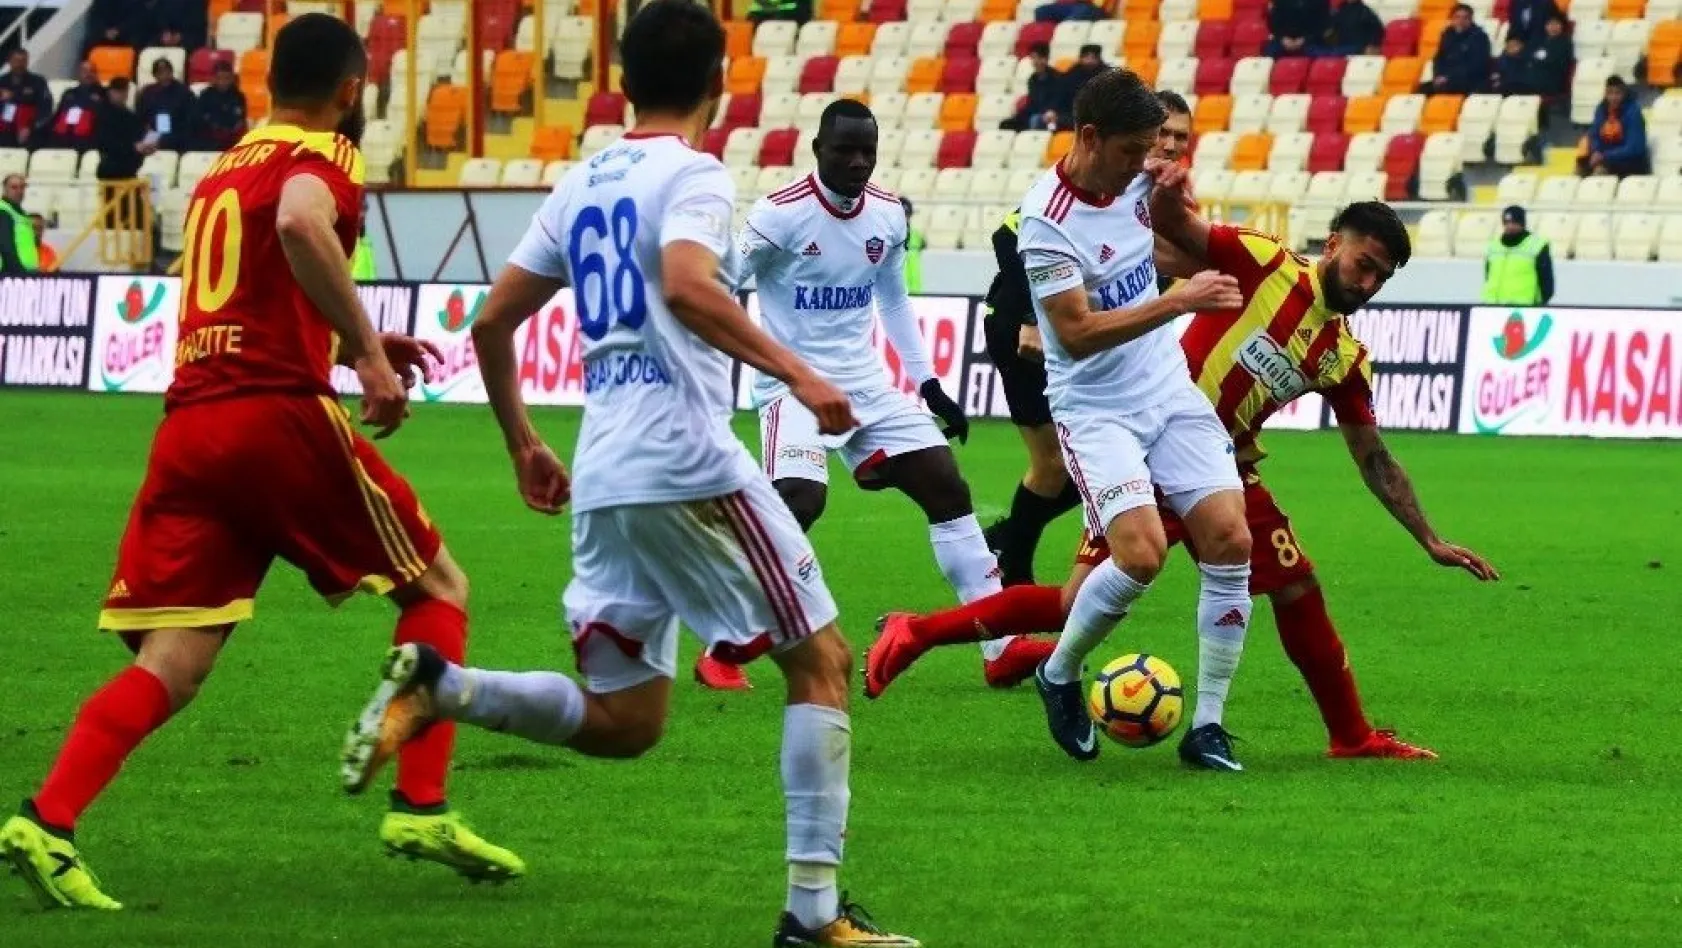 Spor Toto Süper Lig: Evkur Yeni Malatyaspor: 3 - Kardemir Karabükspor:1 (Maç sonucu)
